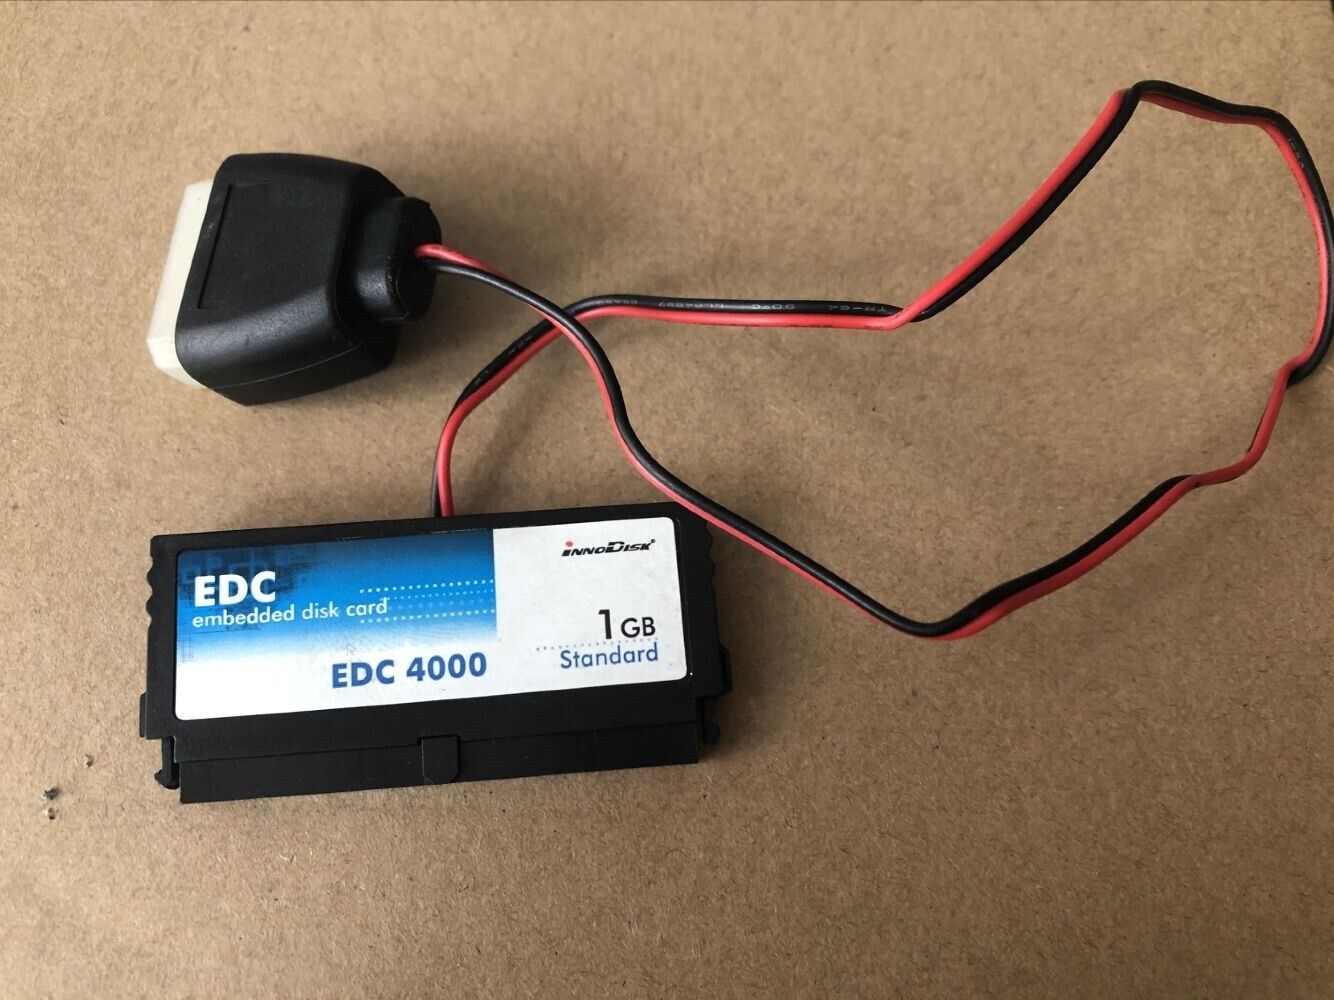 EDC 1GB embedded disk card iNNODISK EDC 4000 40pin DOM